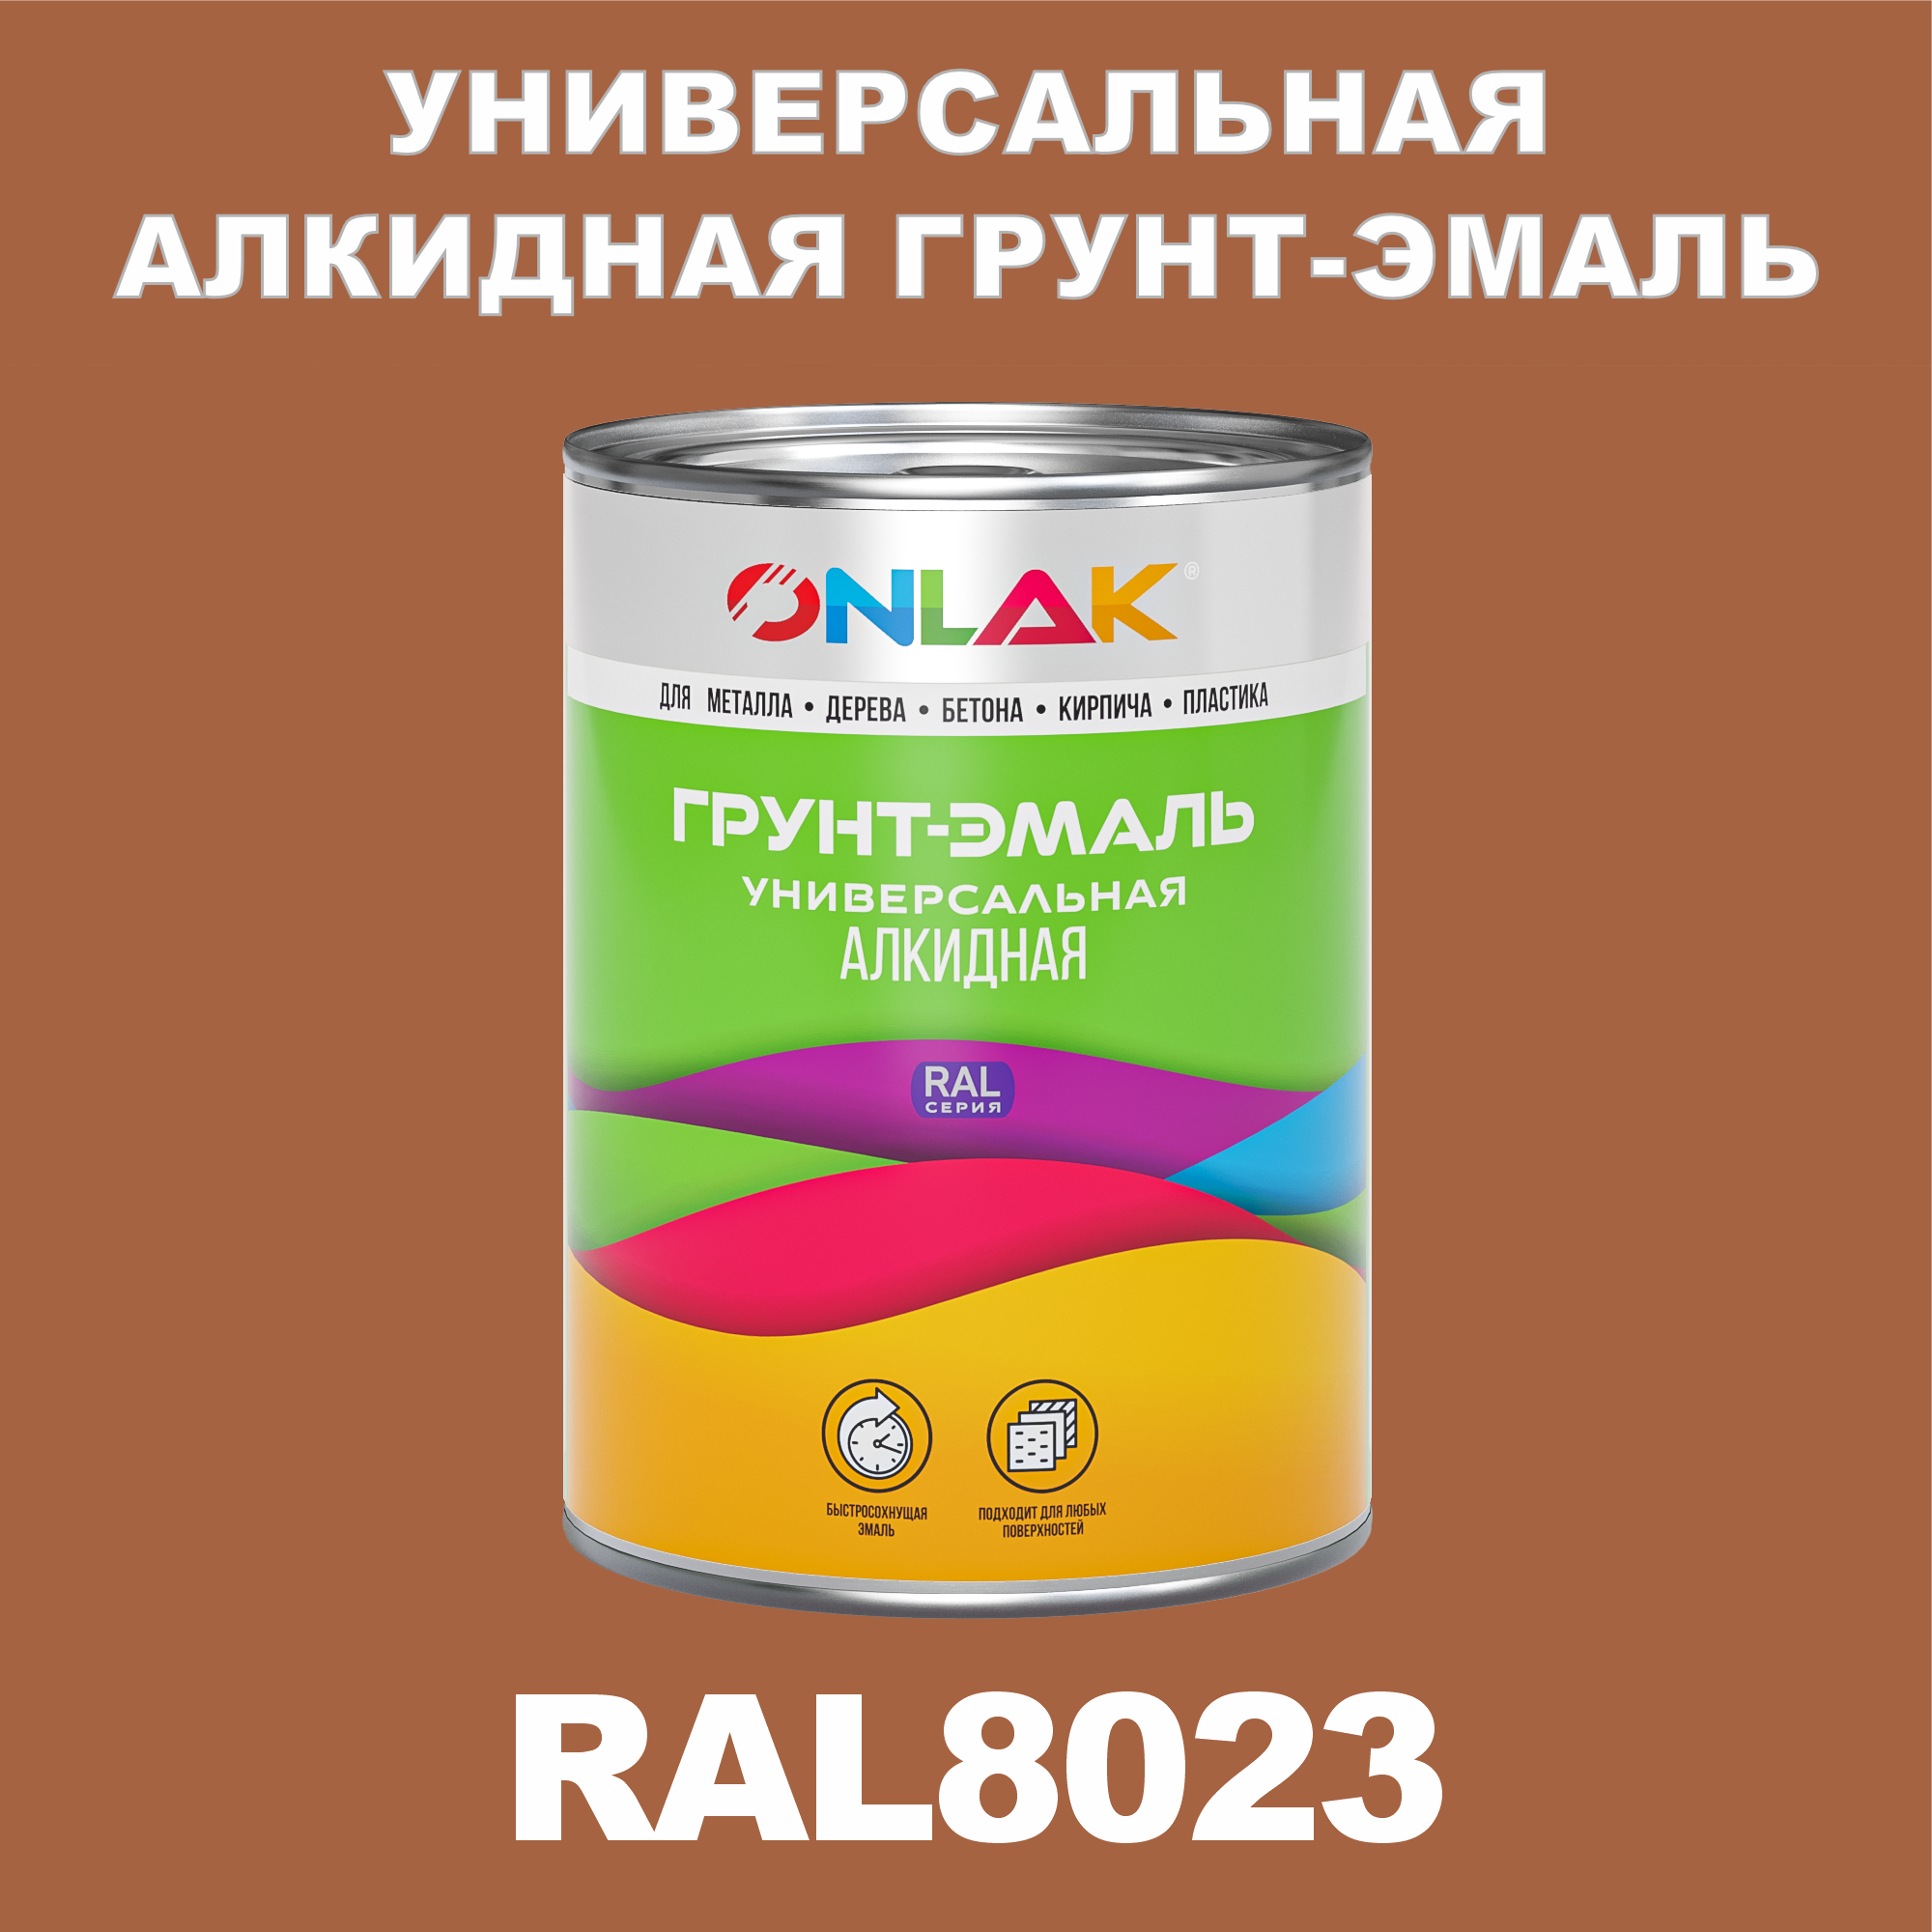 Грунт-эмаль ONLAK 1К RAL8023 антикоррозионная алкидная по металлу по ржавчине 1 кг